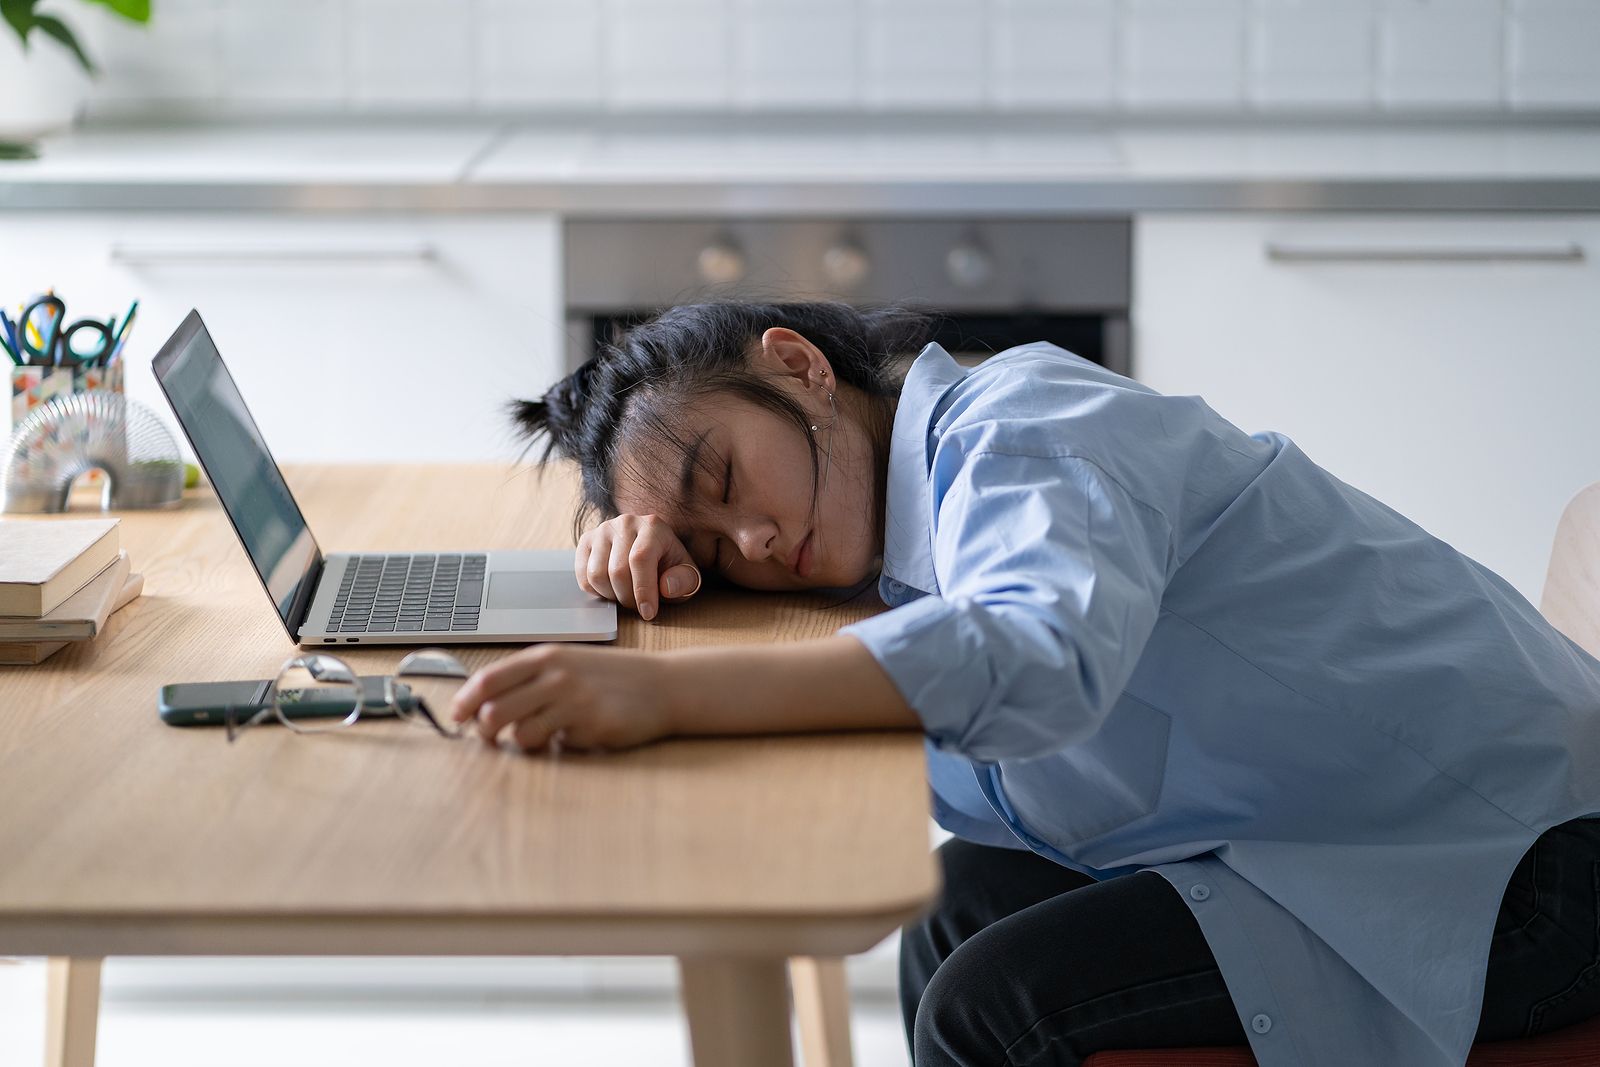  La siesta japonesa: qué es y qué beneficios tiene para la salud